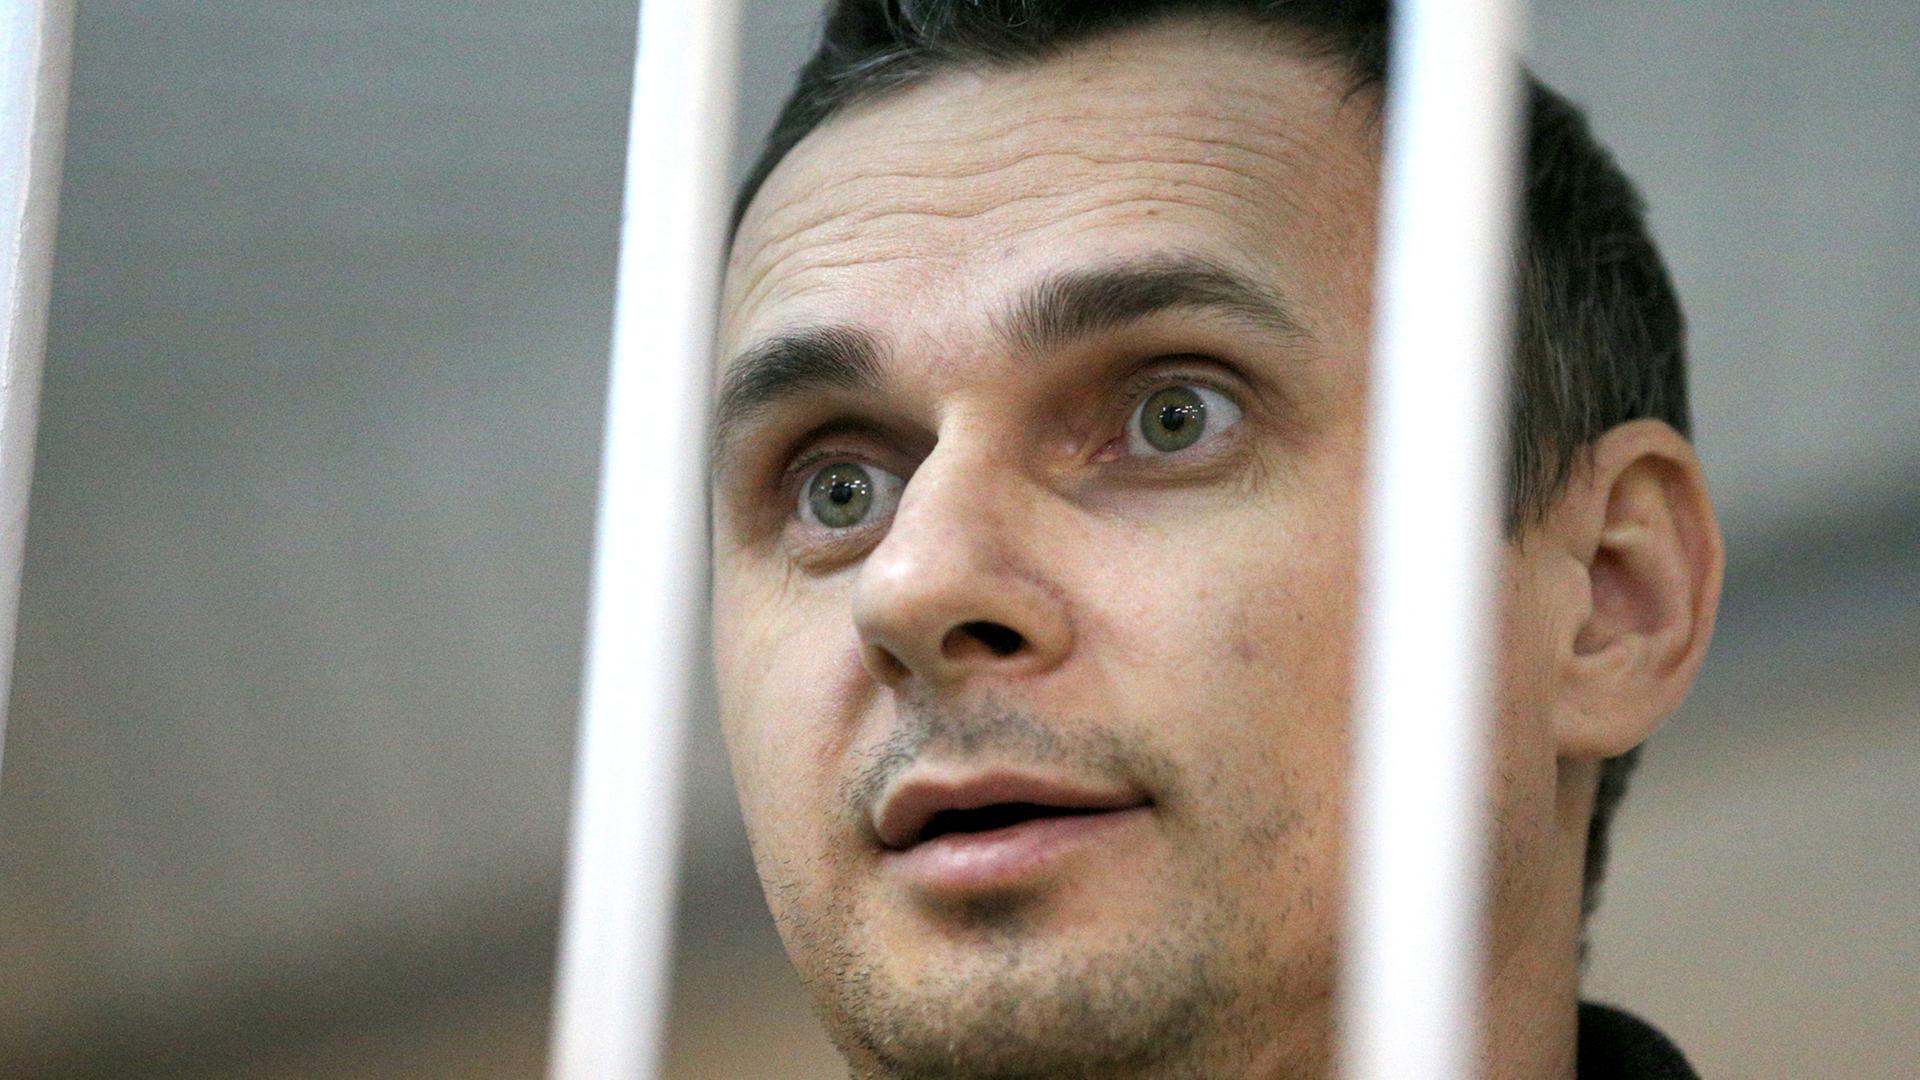 Der ukrainische Kinoregisseur Oleg Senzow bei einer gerichtlichen Anhörung im Dezember 2014 in Moskau in einem Käfig